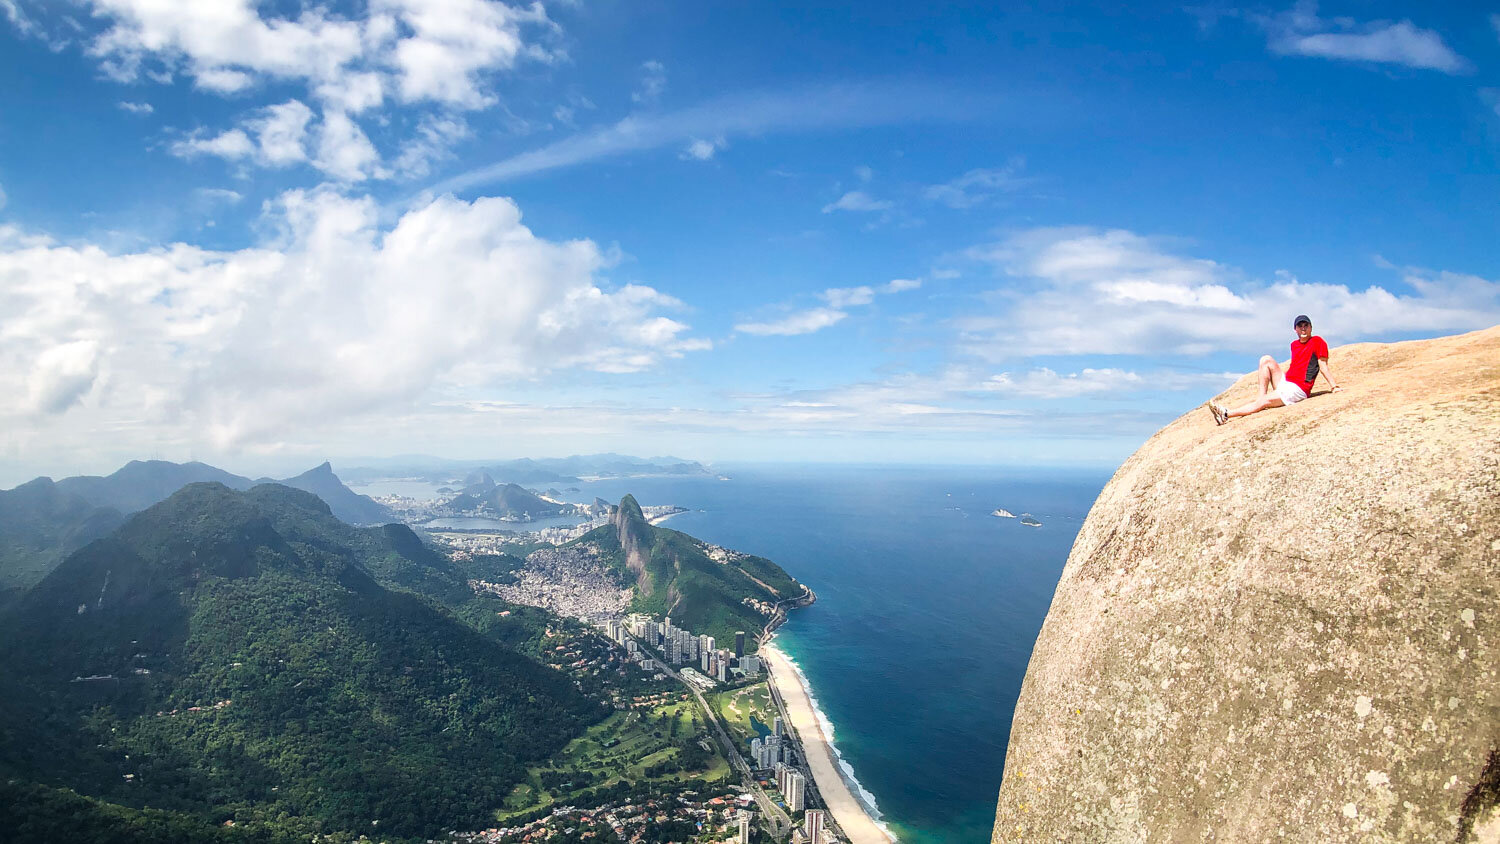 Trilha da Pedra da Gávea, Rio de Janeiro | Rio Mountain Sports